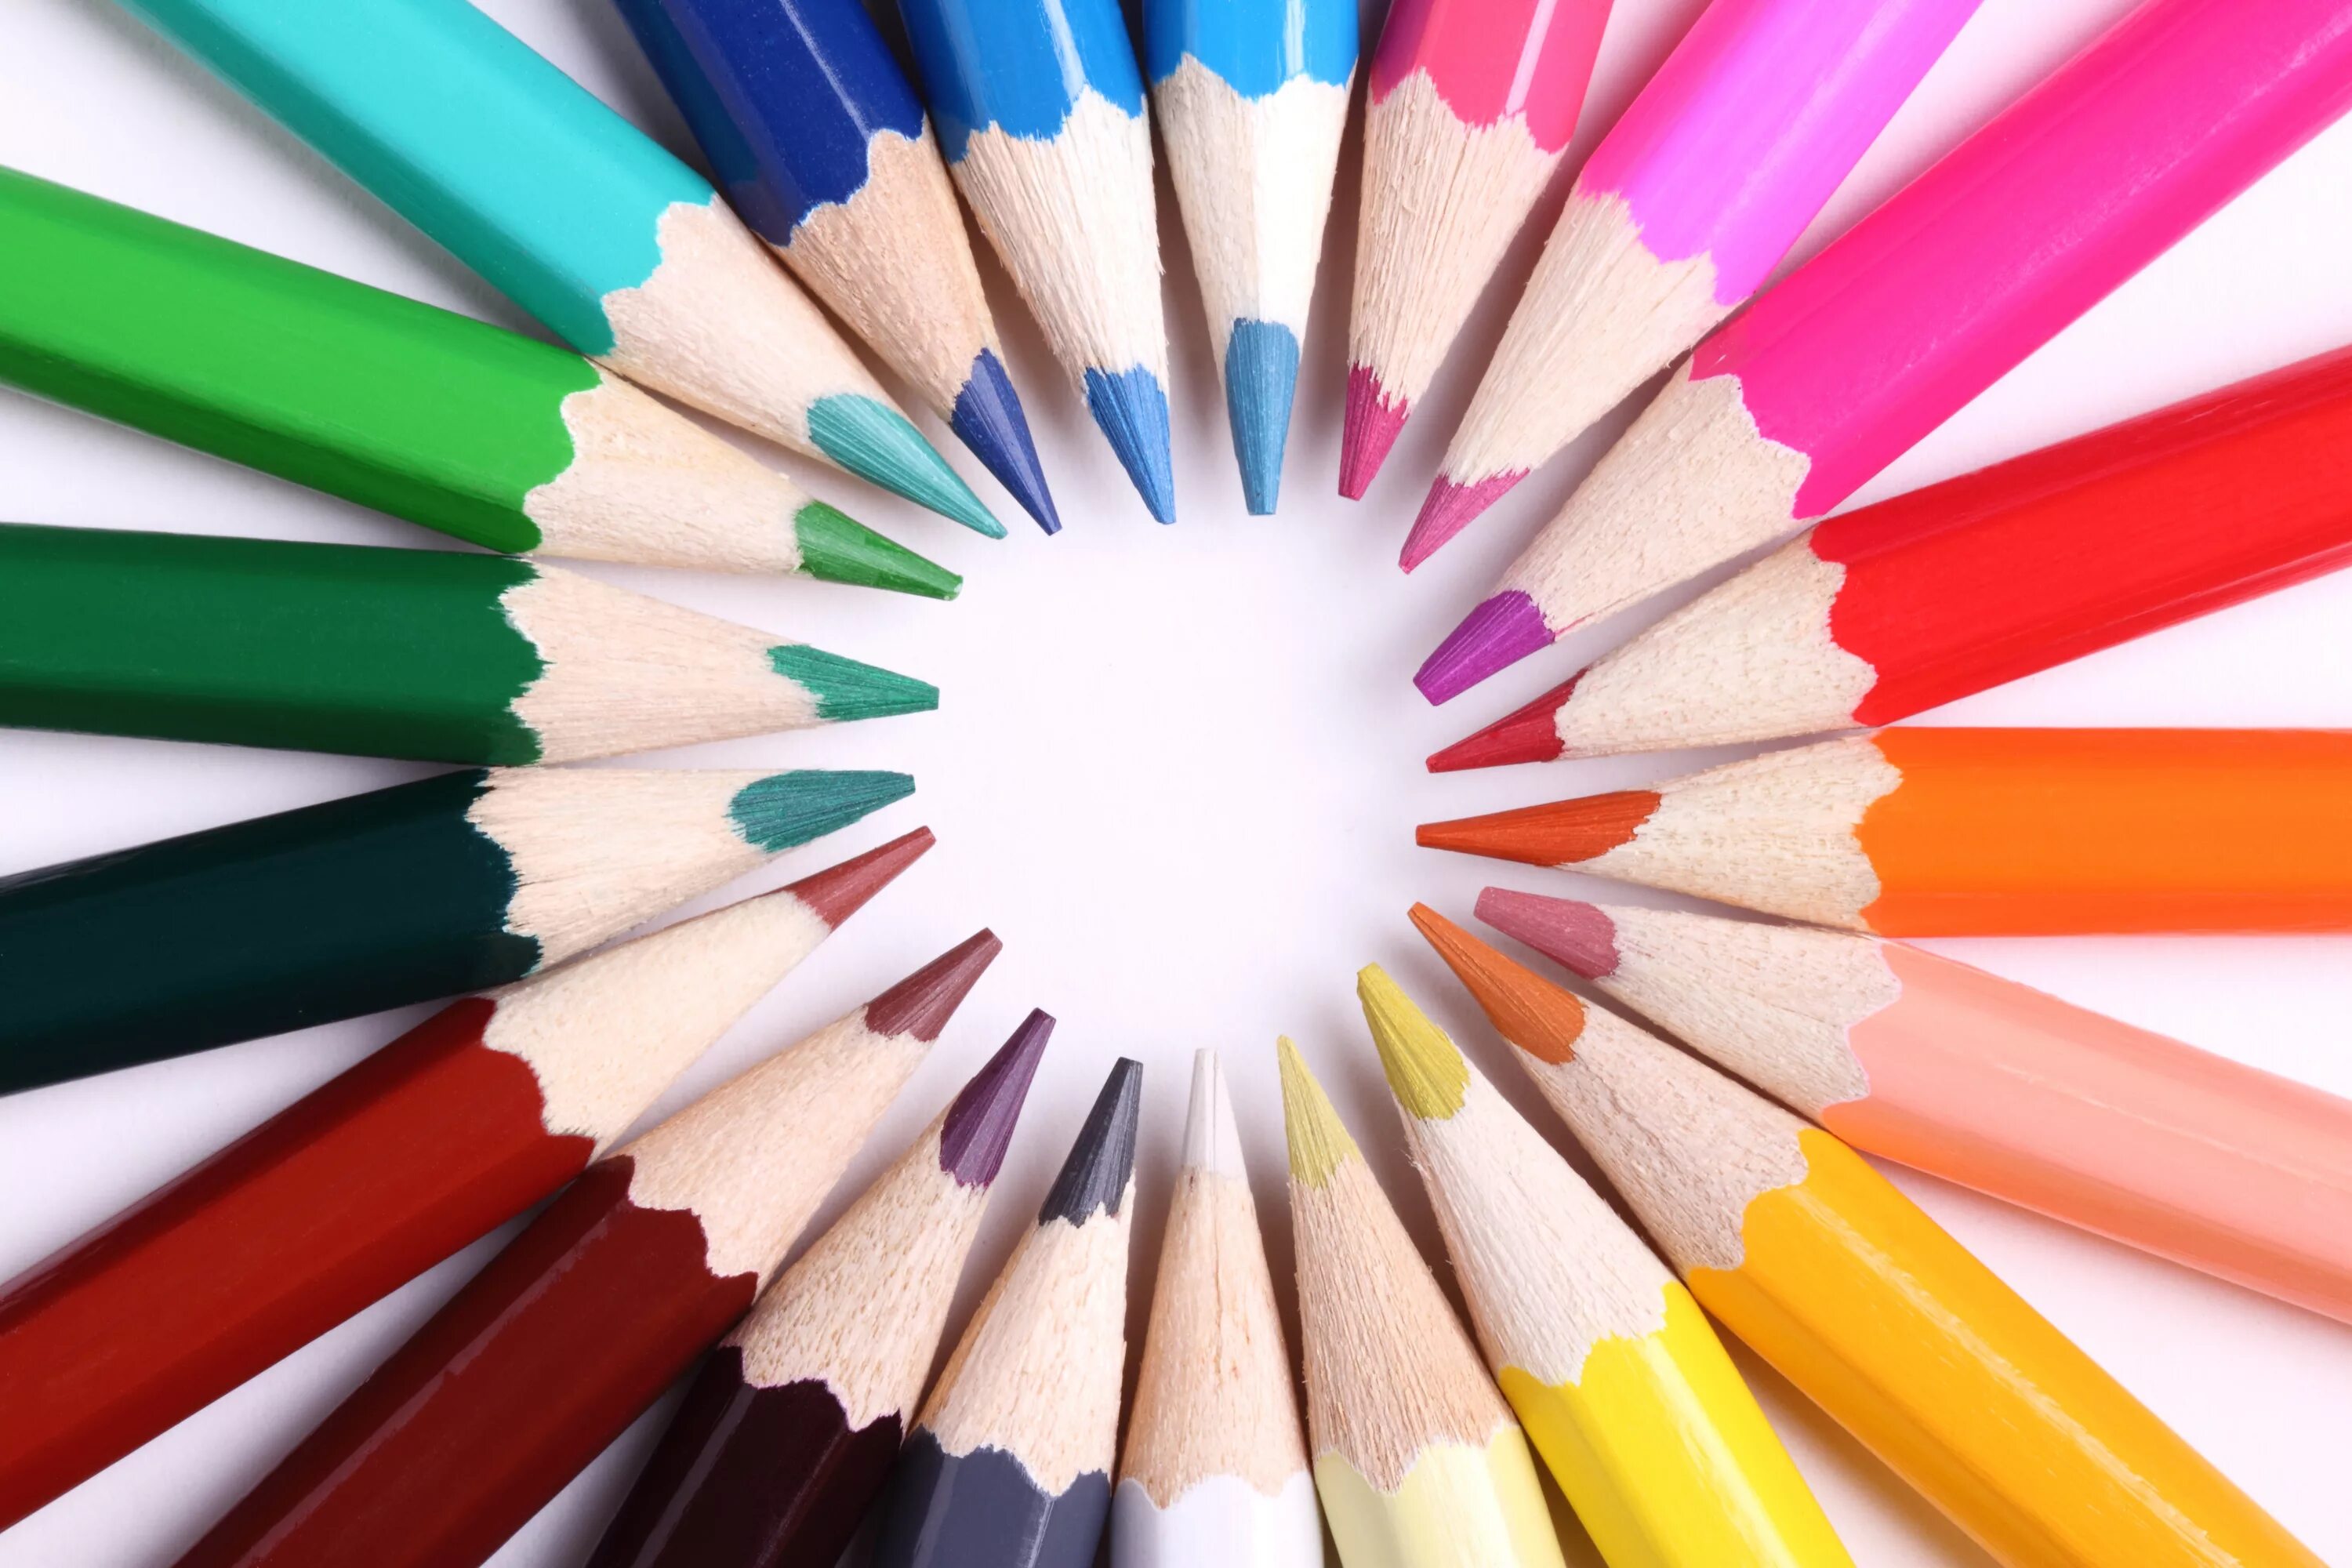 Названия цветов карандашей. Карандаши цветные. Яркие карандаши. Цвета карандашей. Карандаши разных цветов.